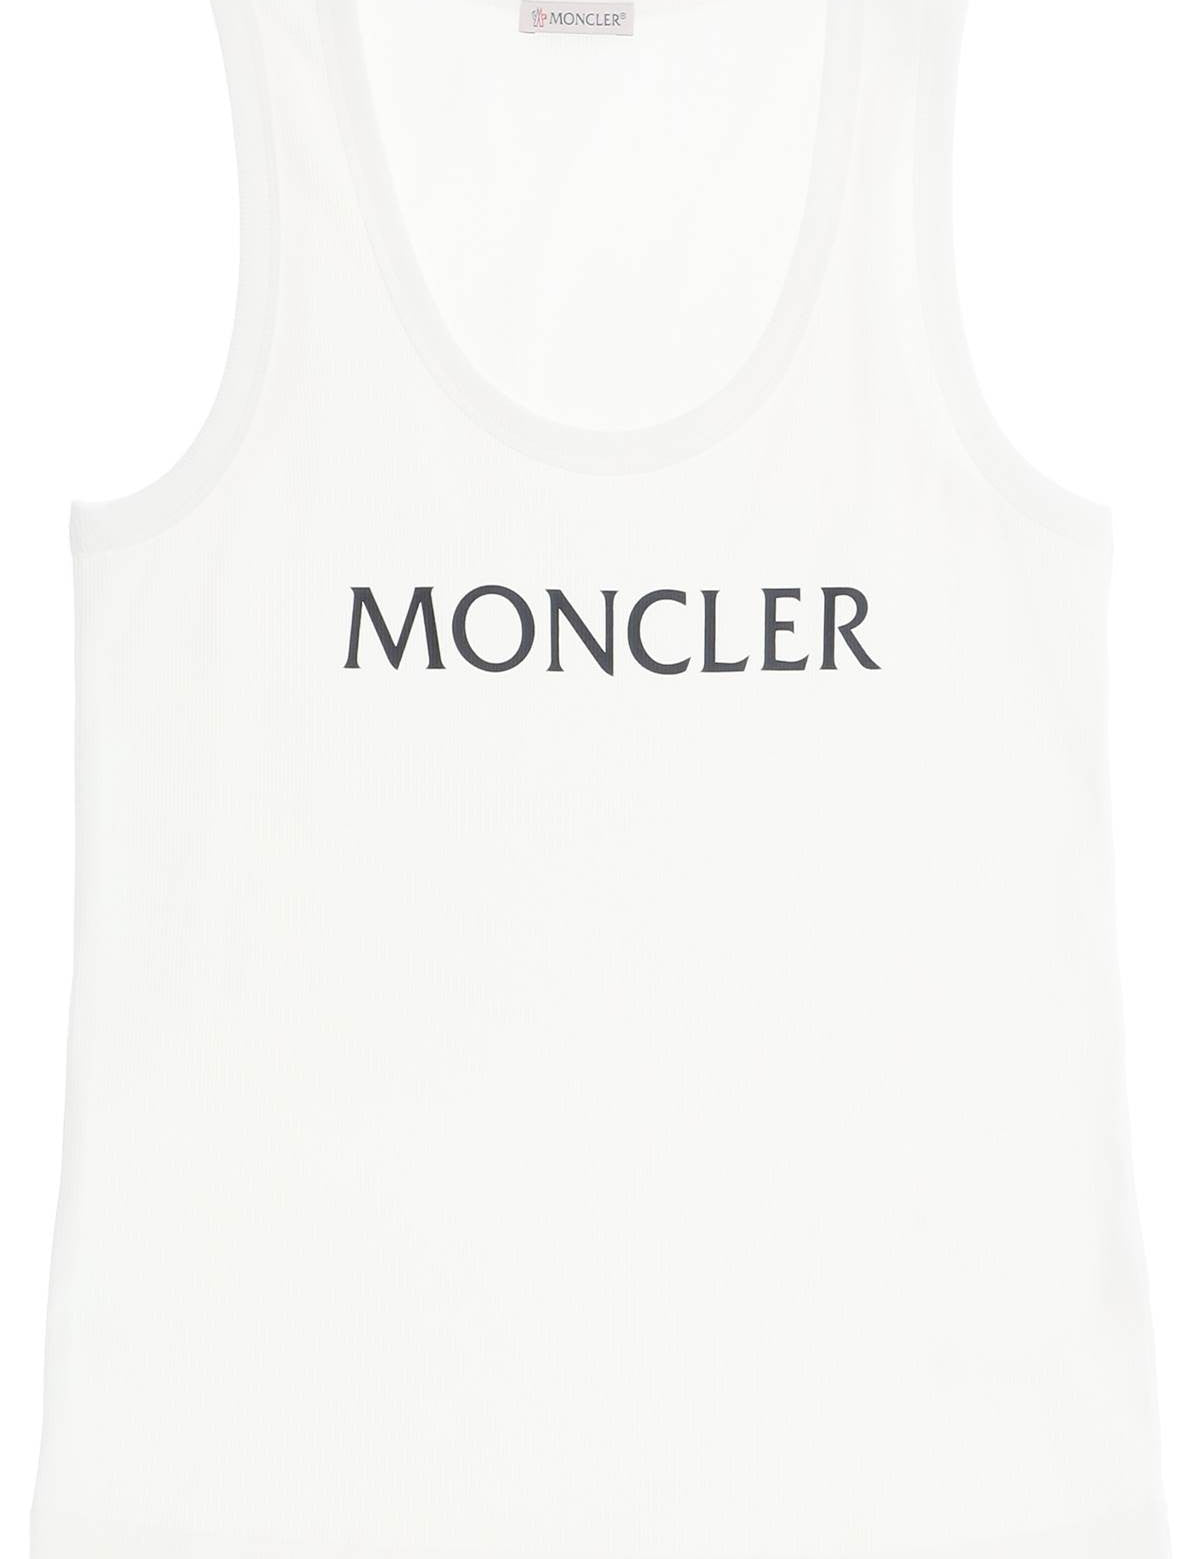 moncler-basic-logo-print-ribbed-tank-top_42cc2077-68ac-441f-aab6-0b3e537fd63c.jpg